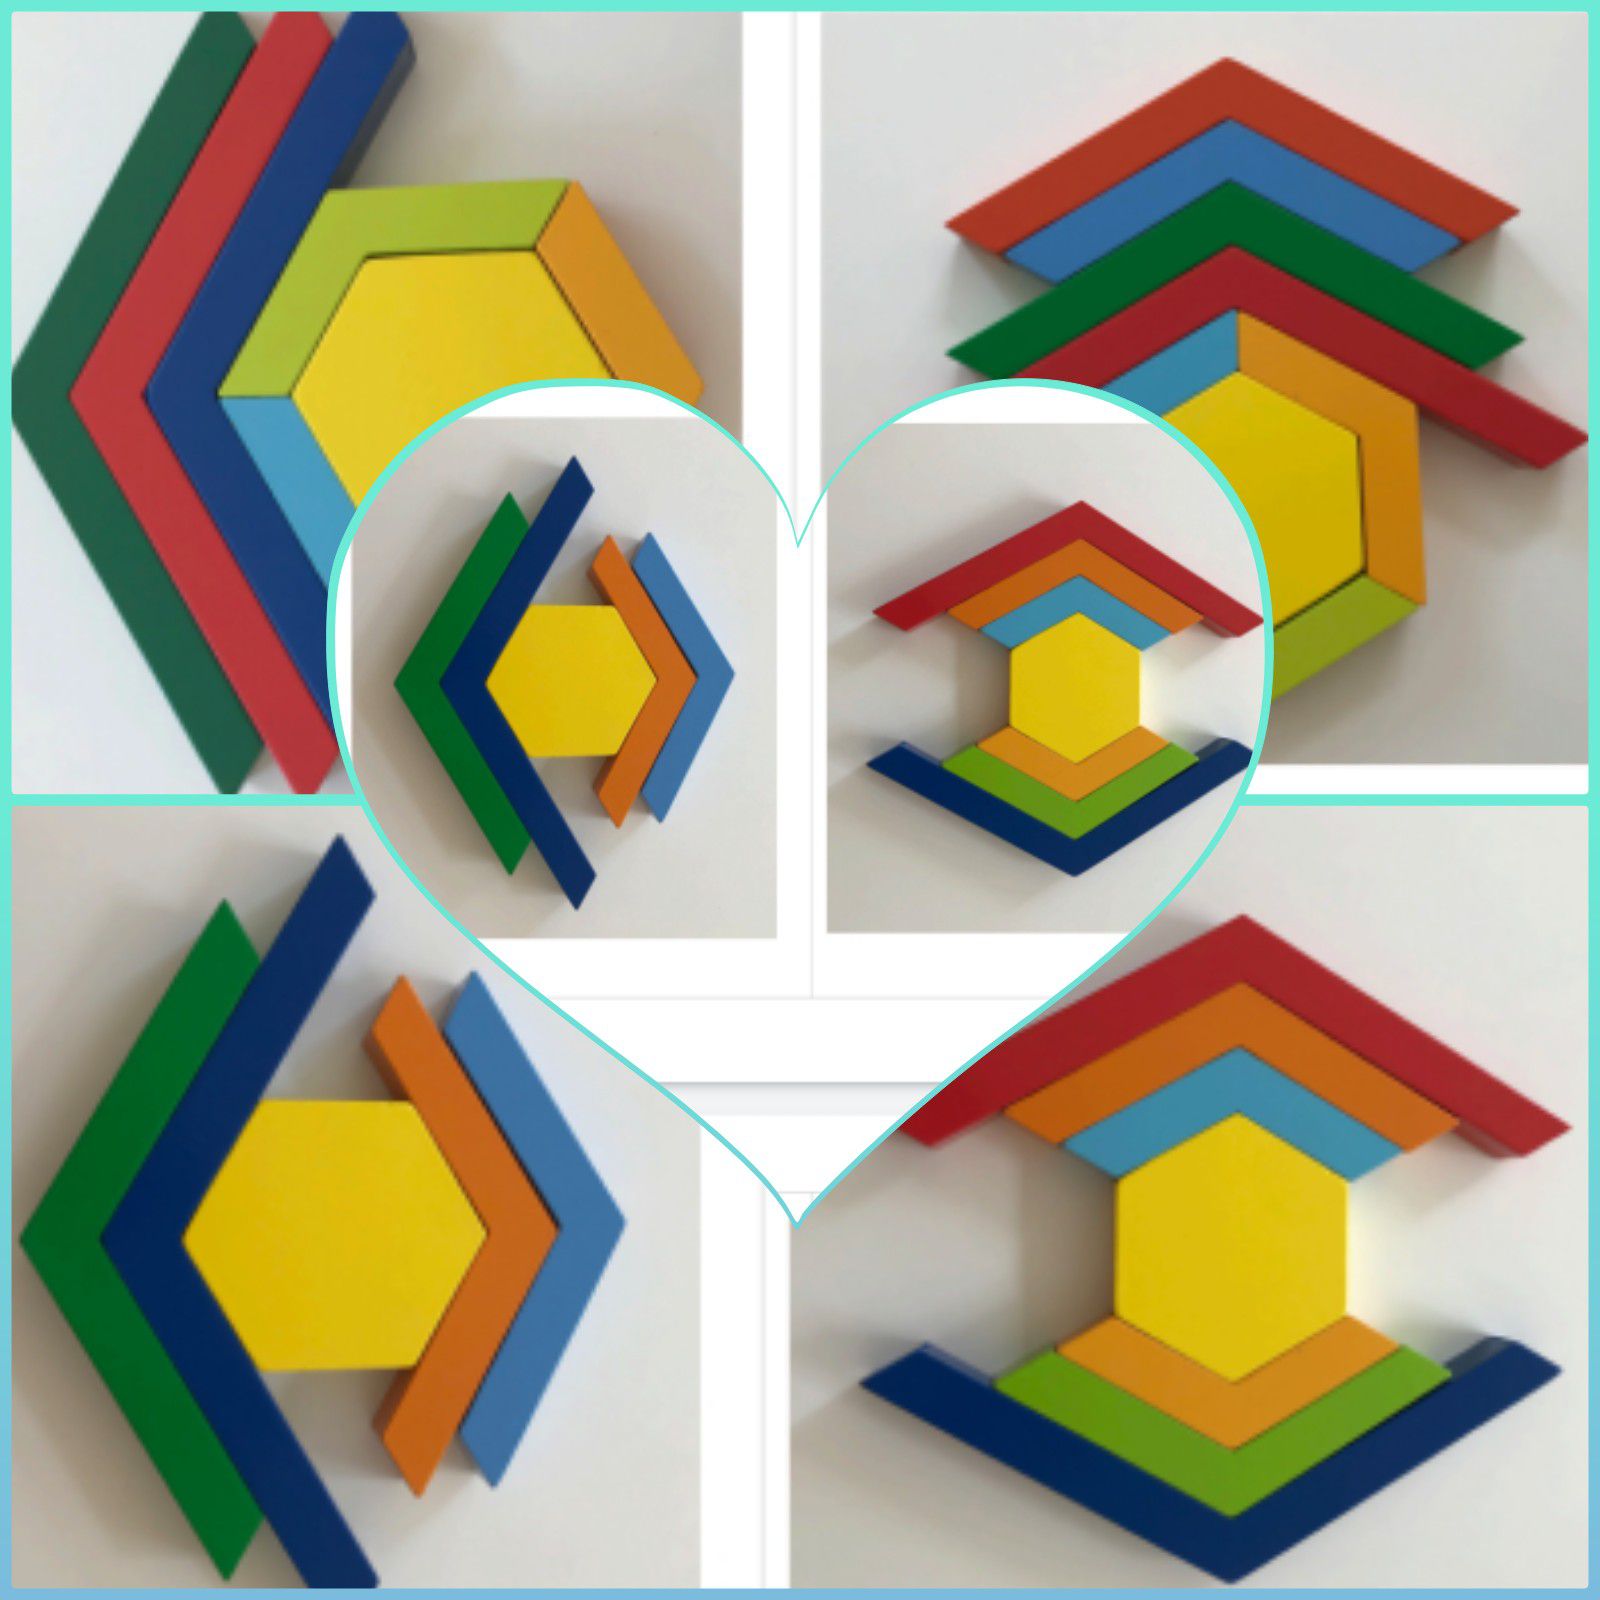 Jeu : L'hexagone coloré de chez Lidl - Mes tresses D Zécolles